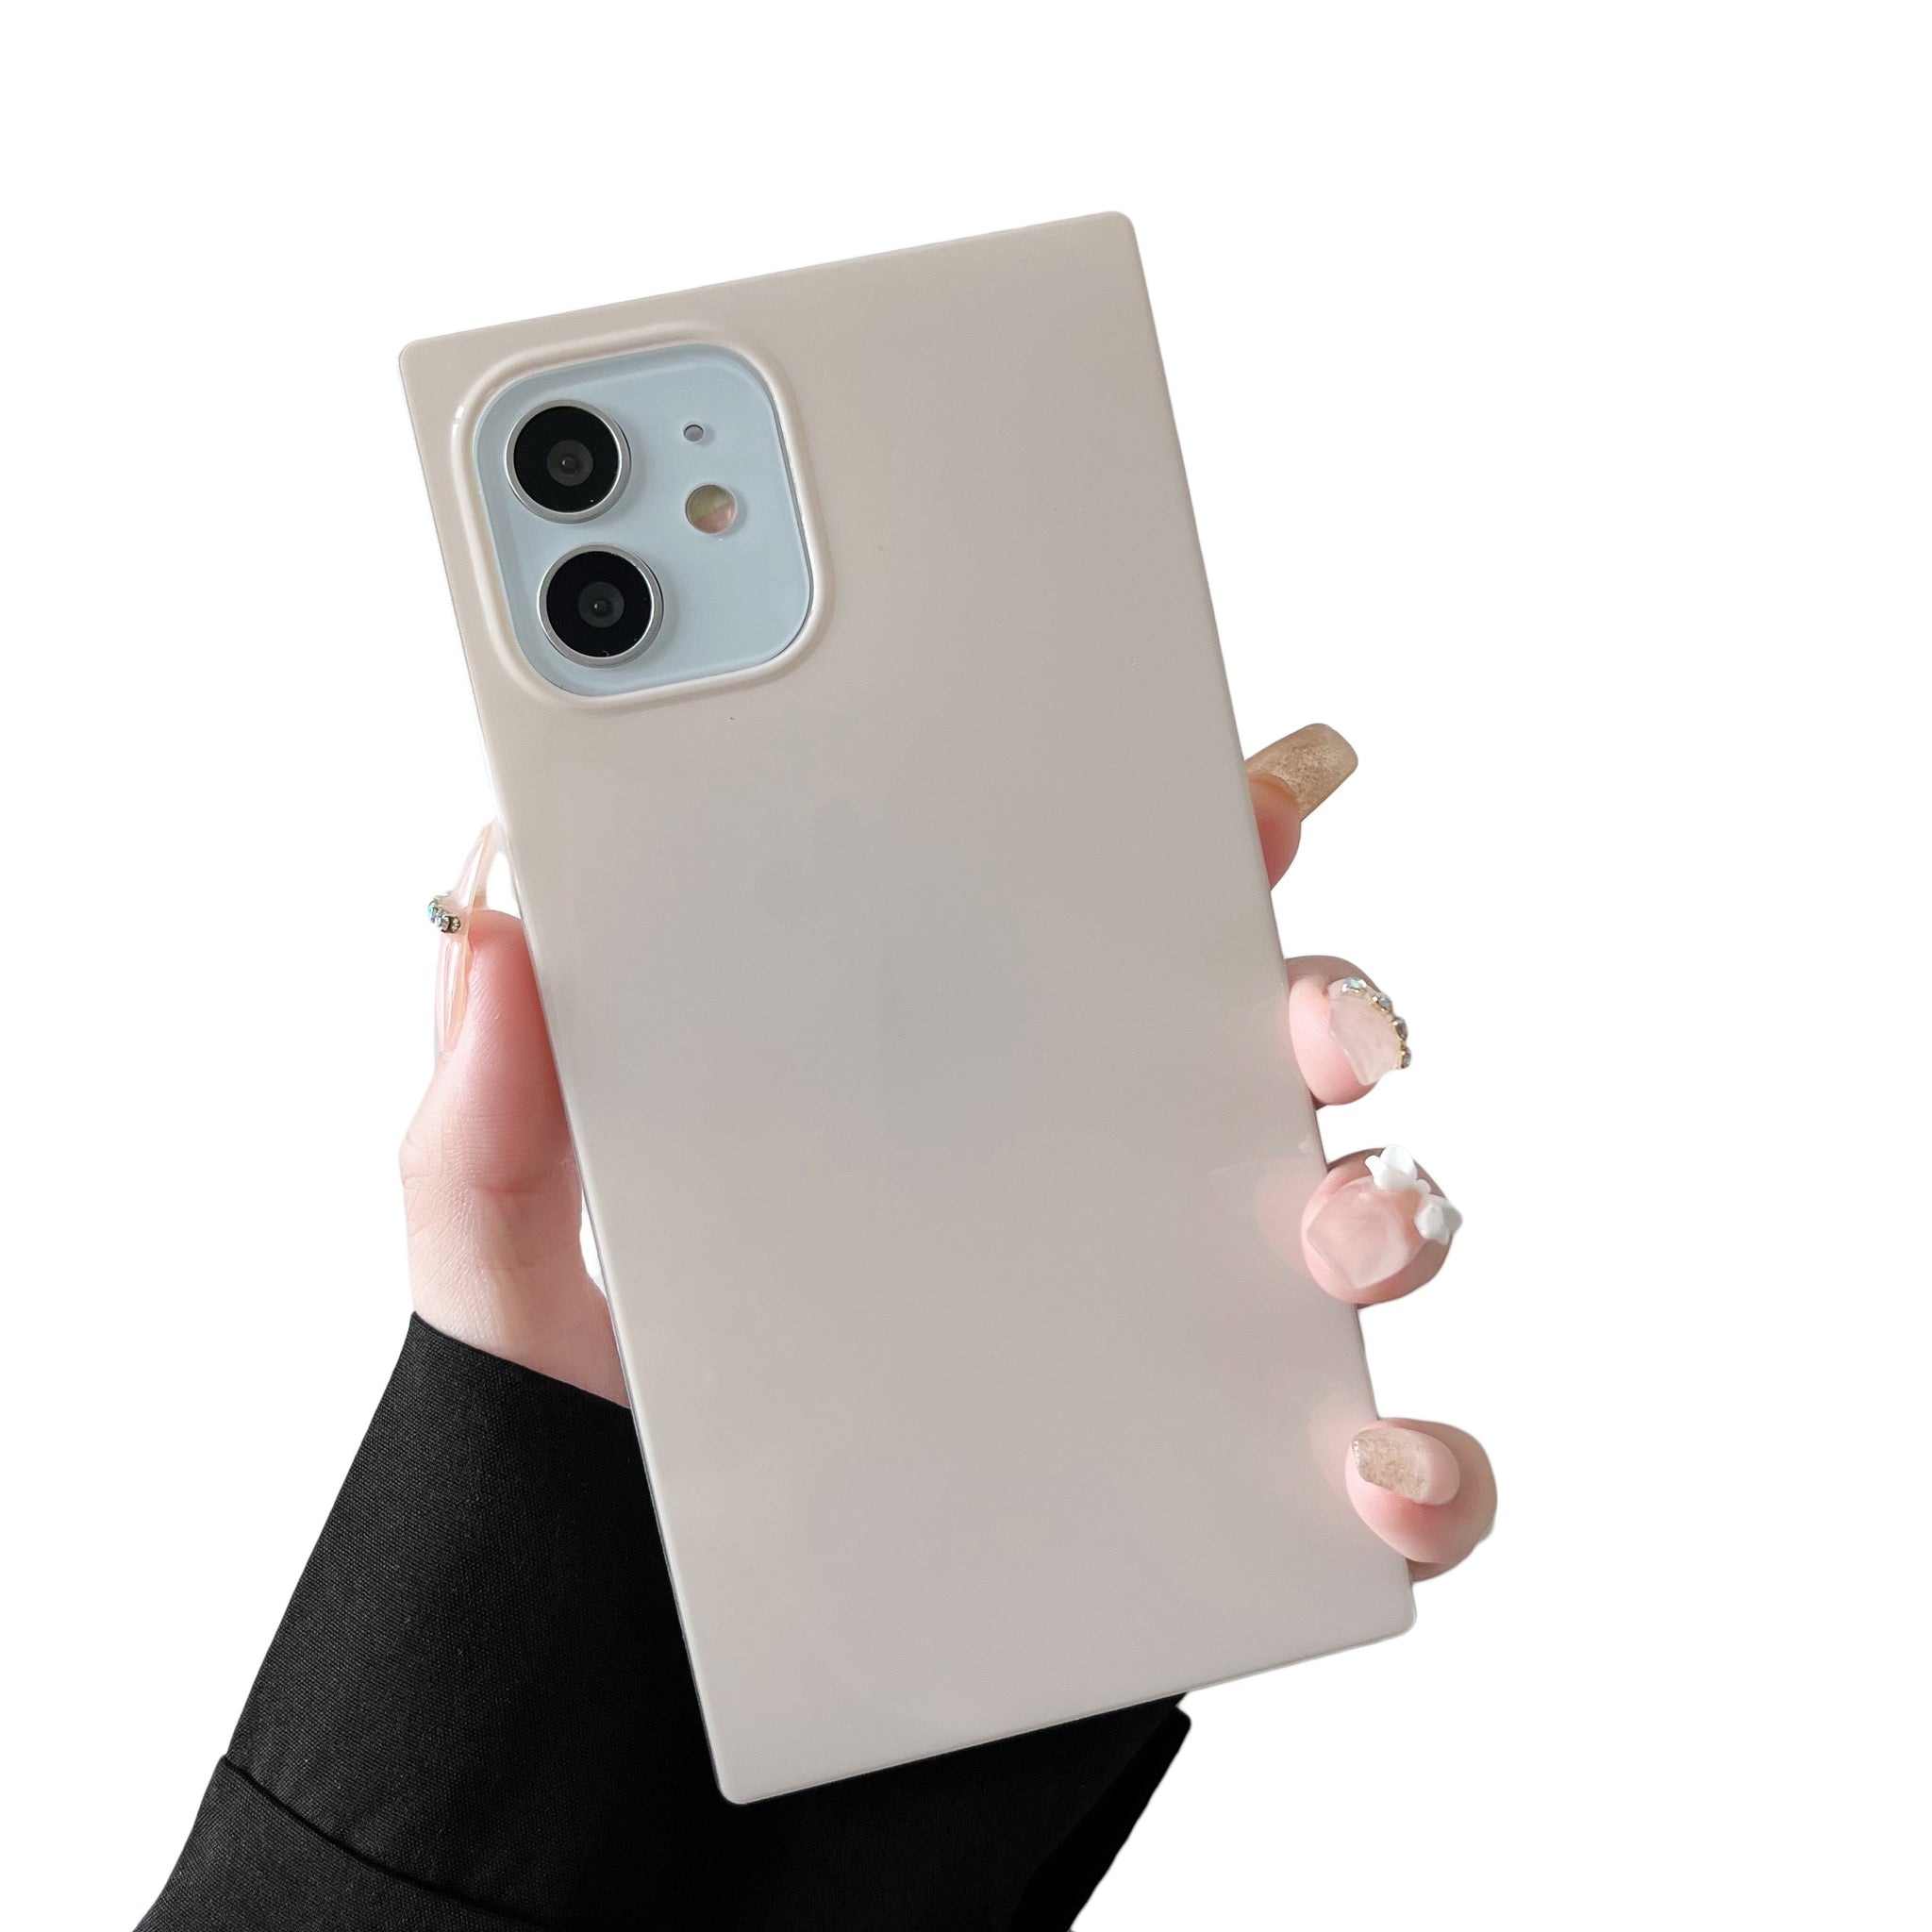 iPhone 11 Pro Case Square Neutral Plain Color (Antique White)